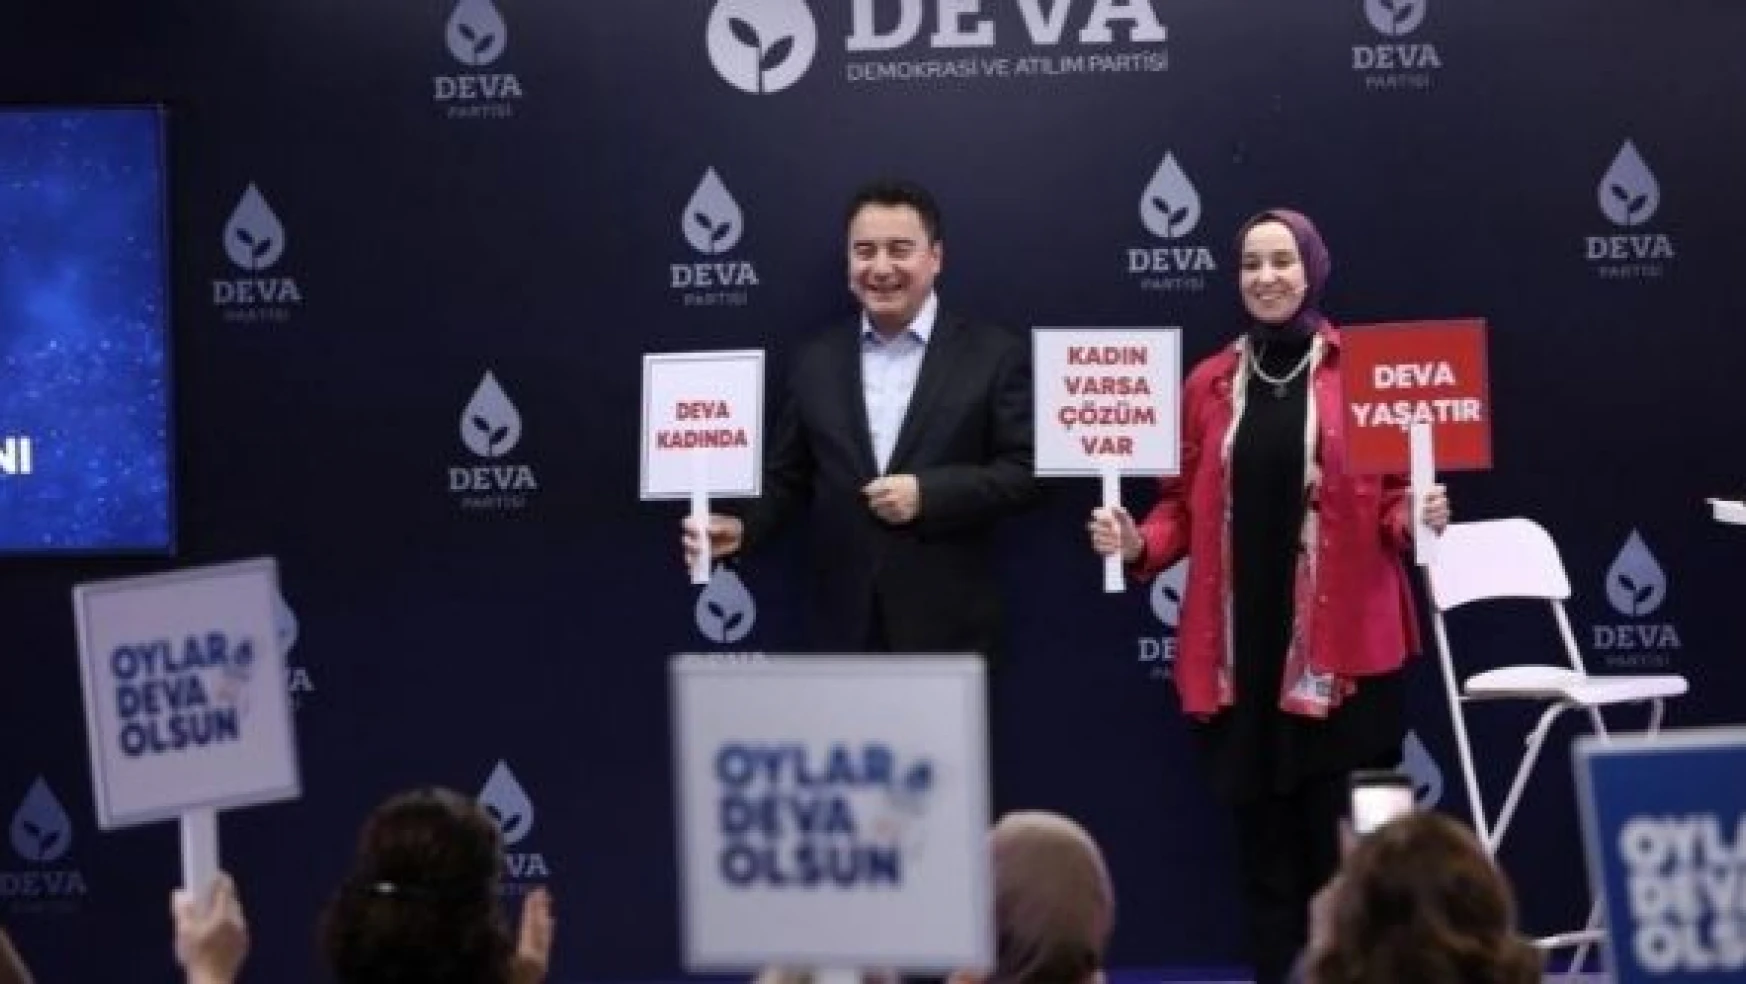 DEVA Partisi Kadın Eylem Planını açıkladı